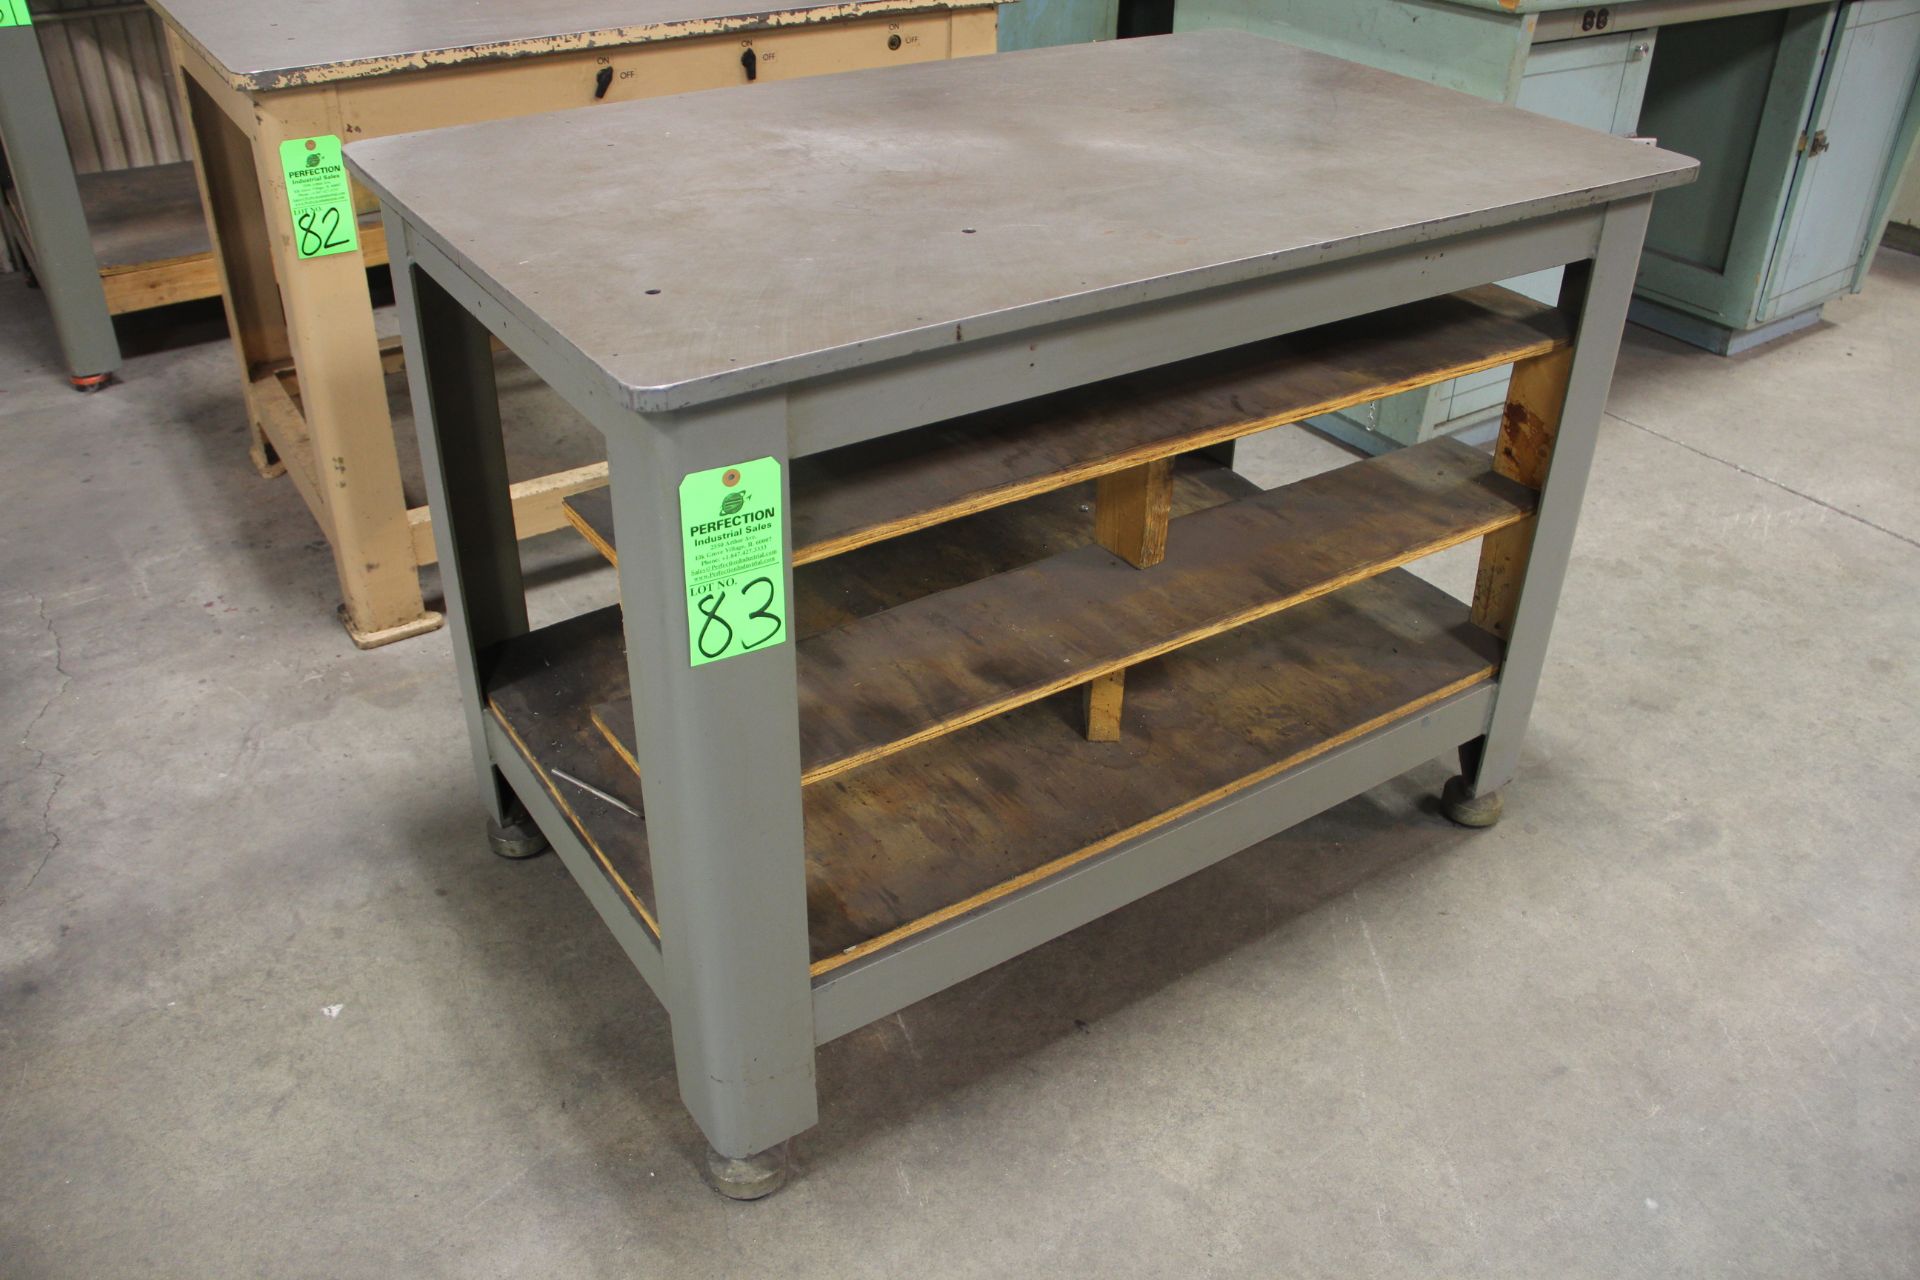 30" x 48" x 3/4" Heavy Duty Steel Table